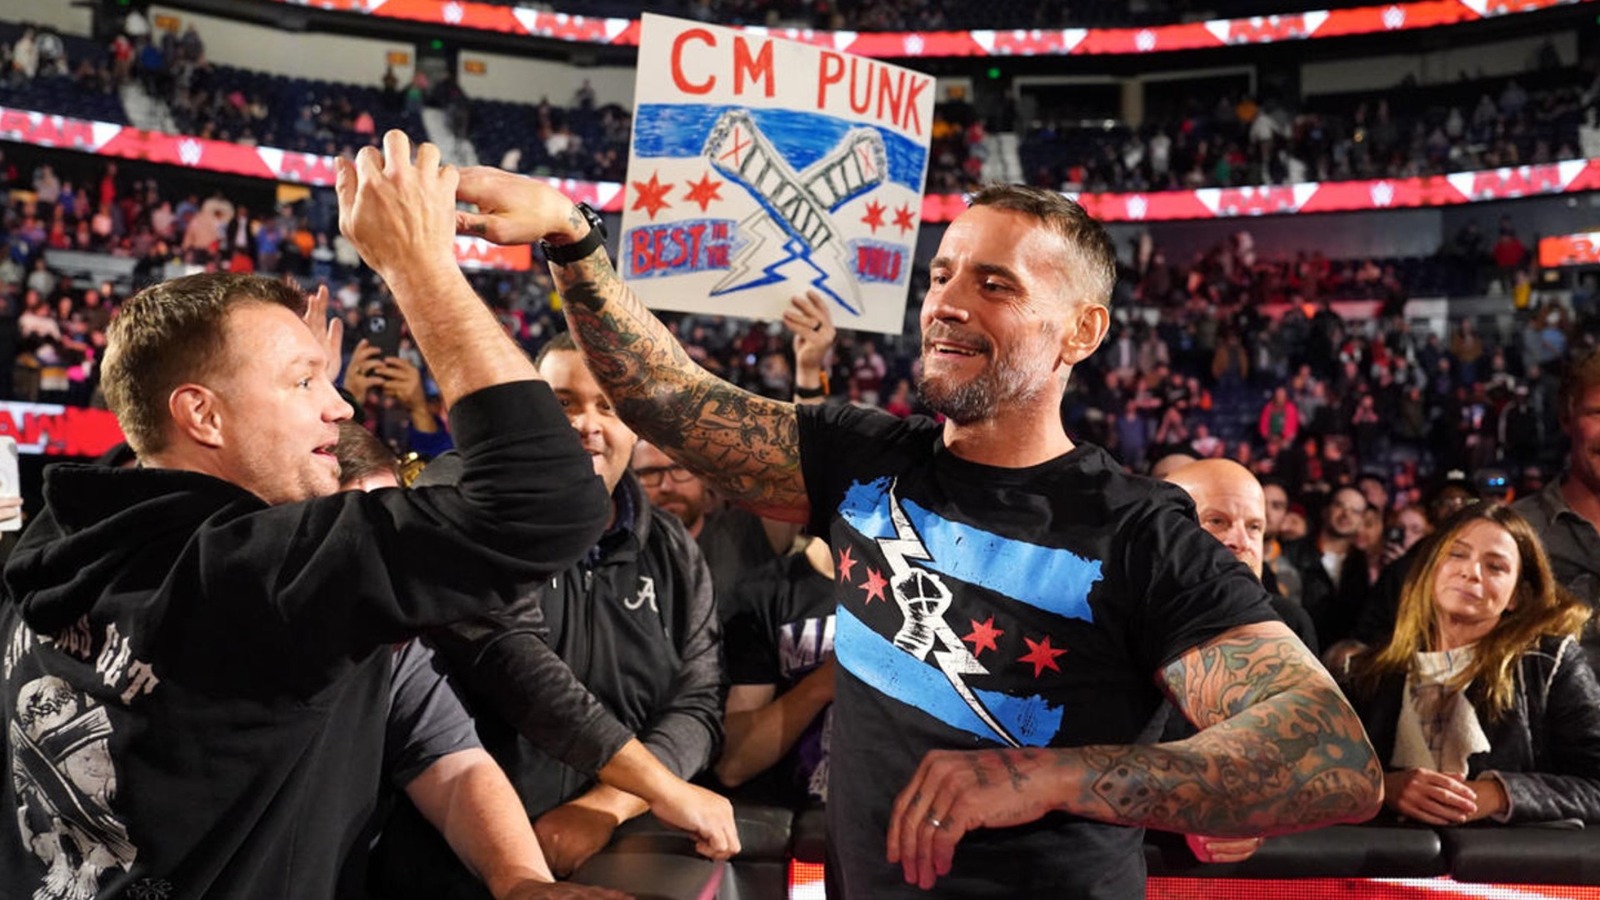 Booker T llama "Absolute Facts" a una línea de la promoción de regreso de CM Punk a la WWE